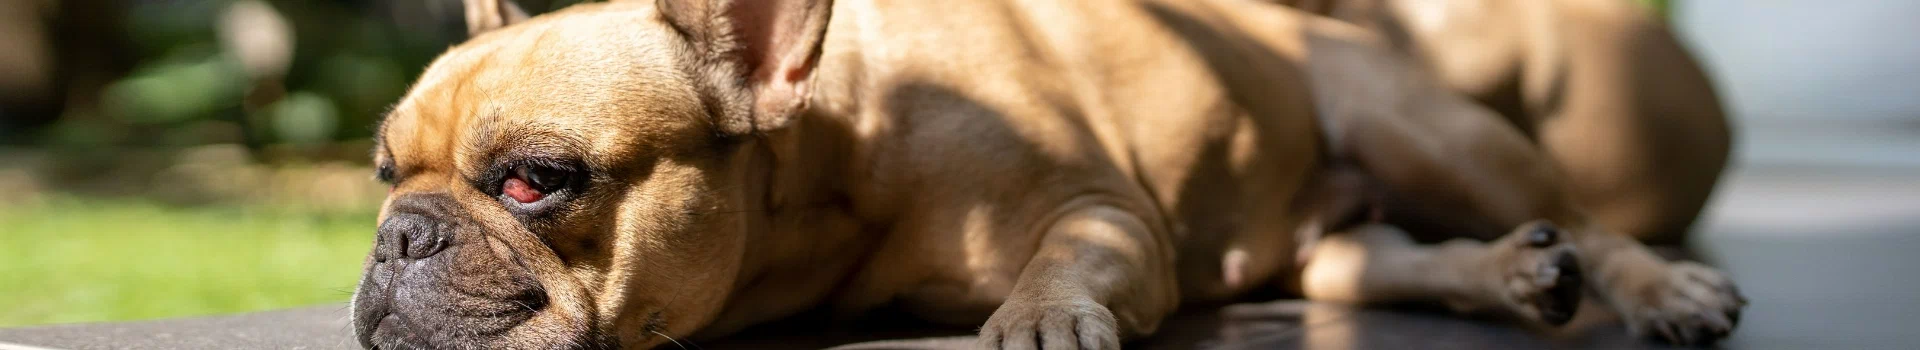 brązowy pies z wystawionym językiem